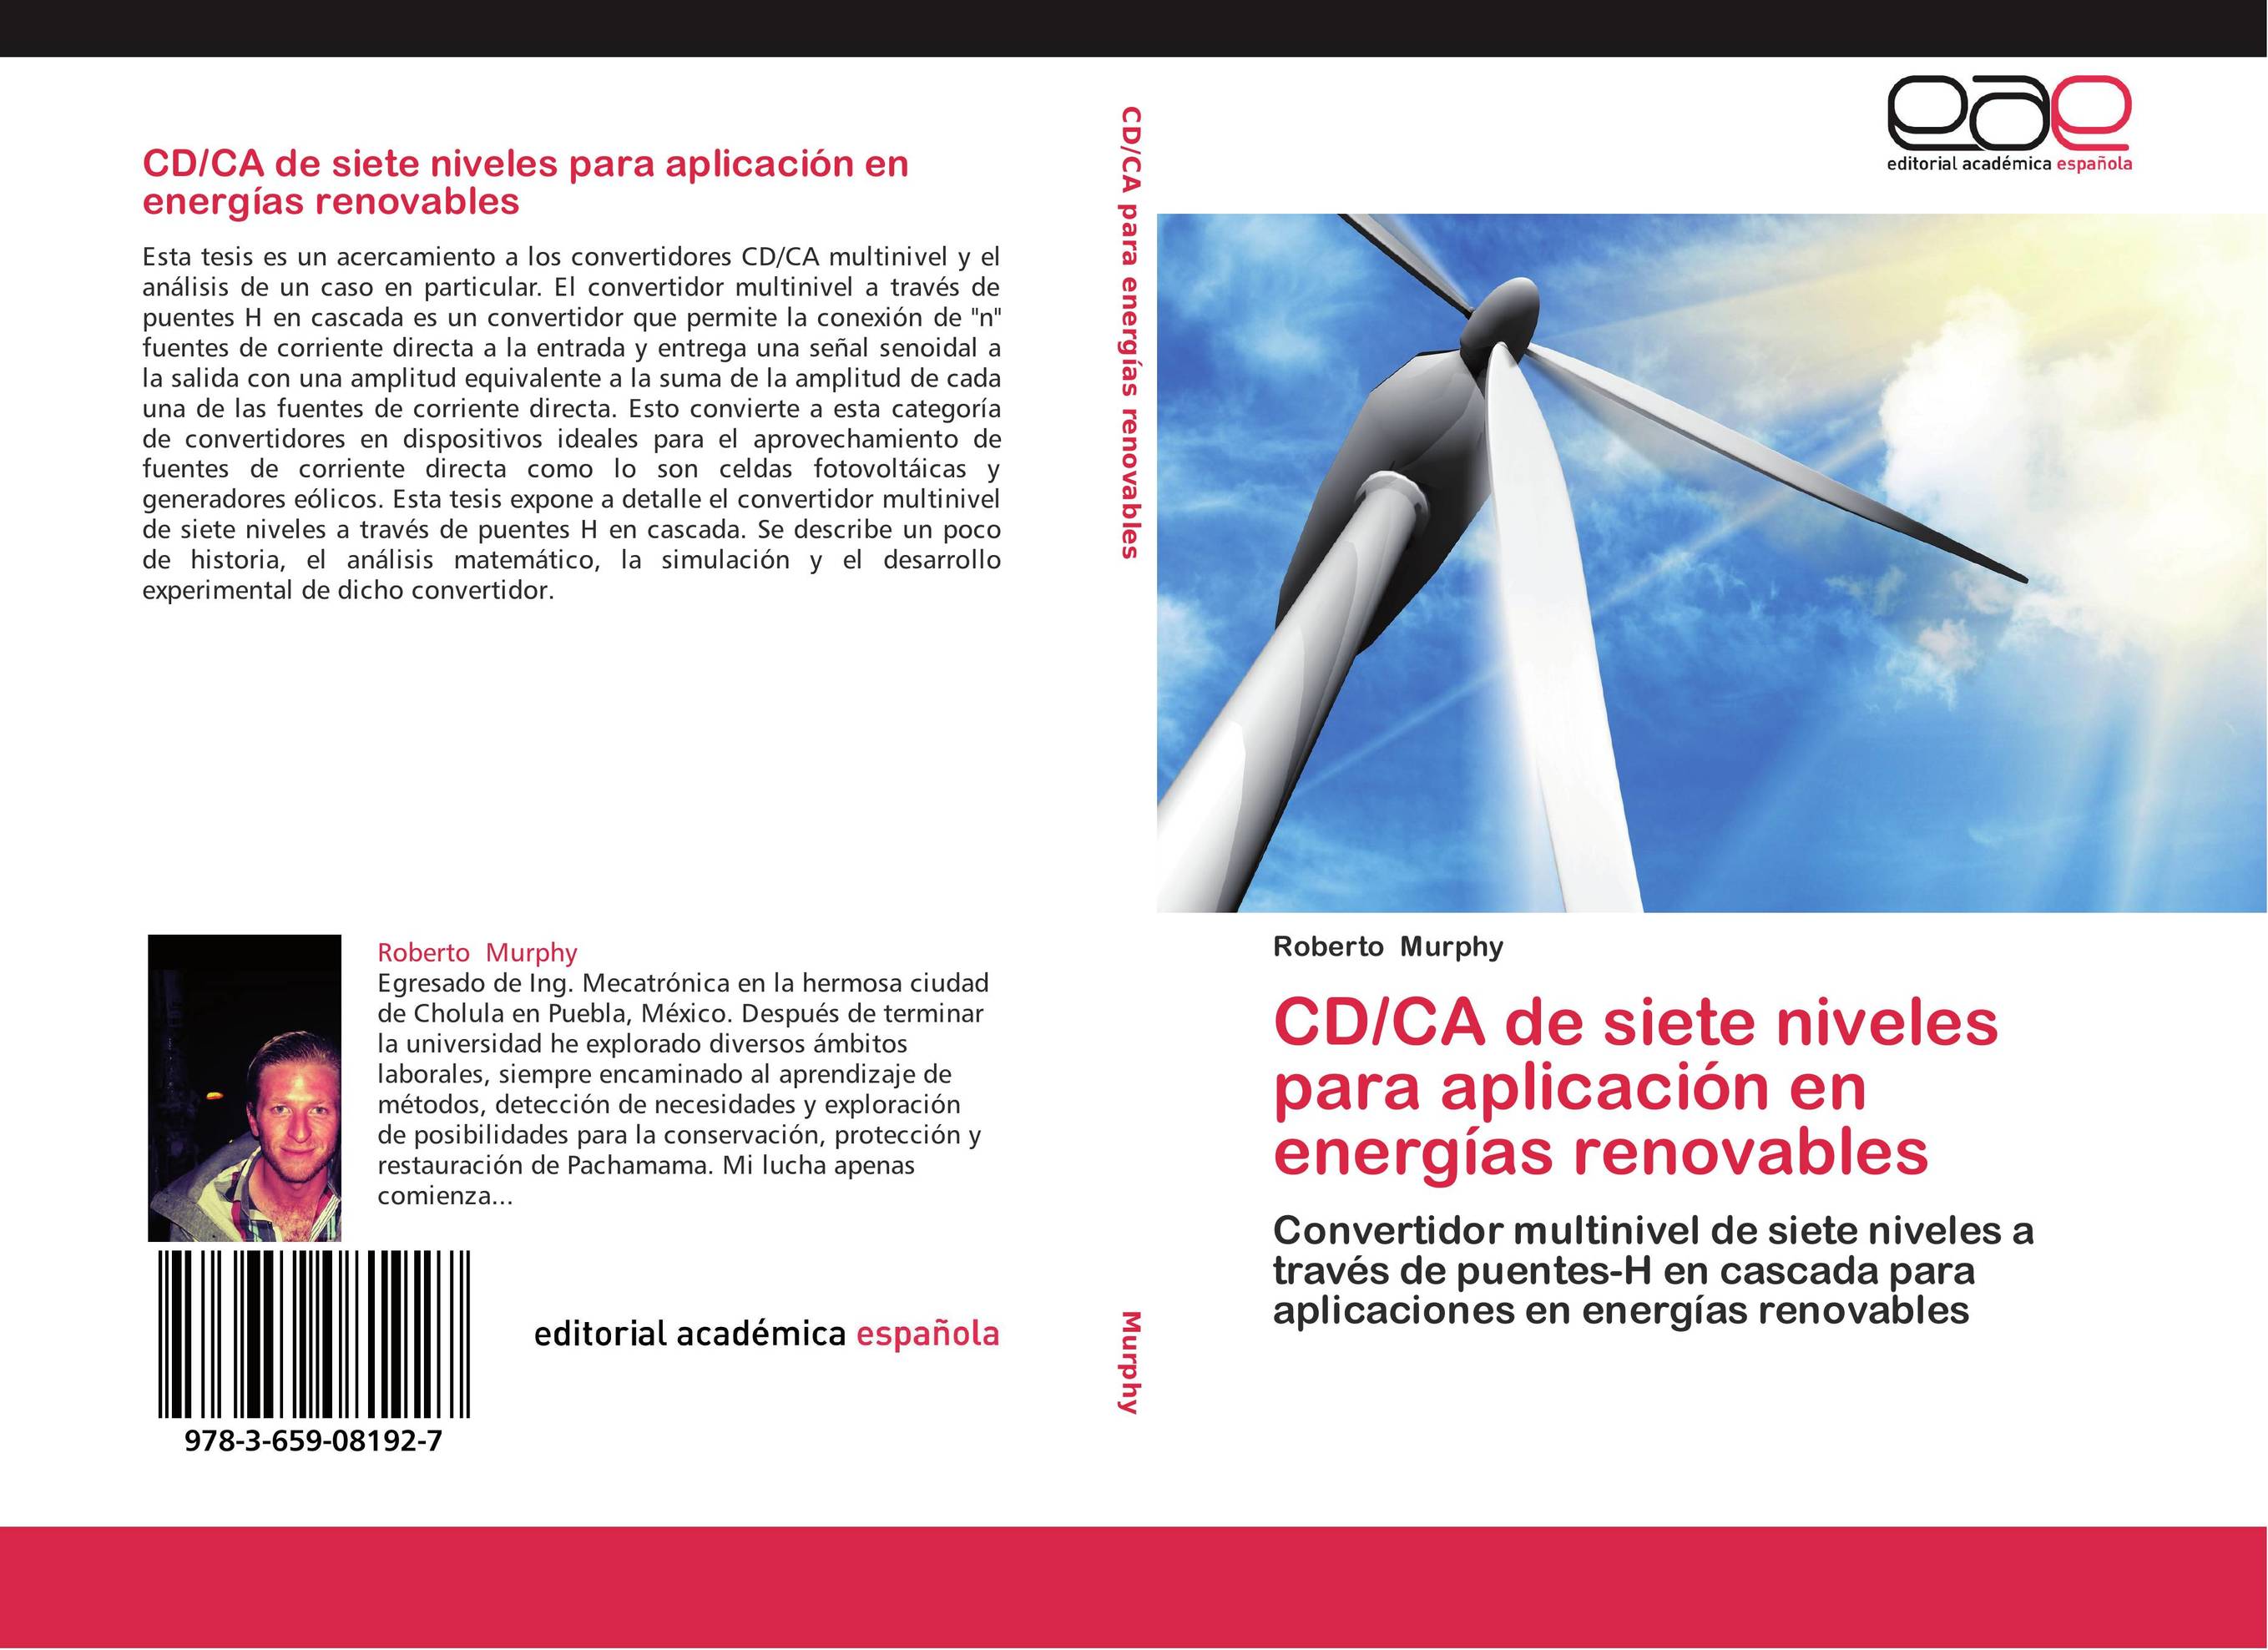 CD/CA de siete niveles para aplicación en energías renovables